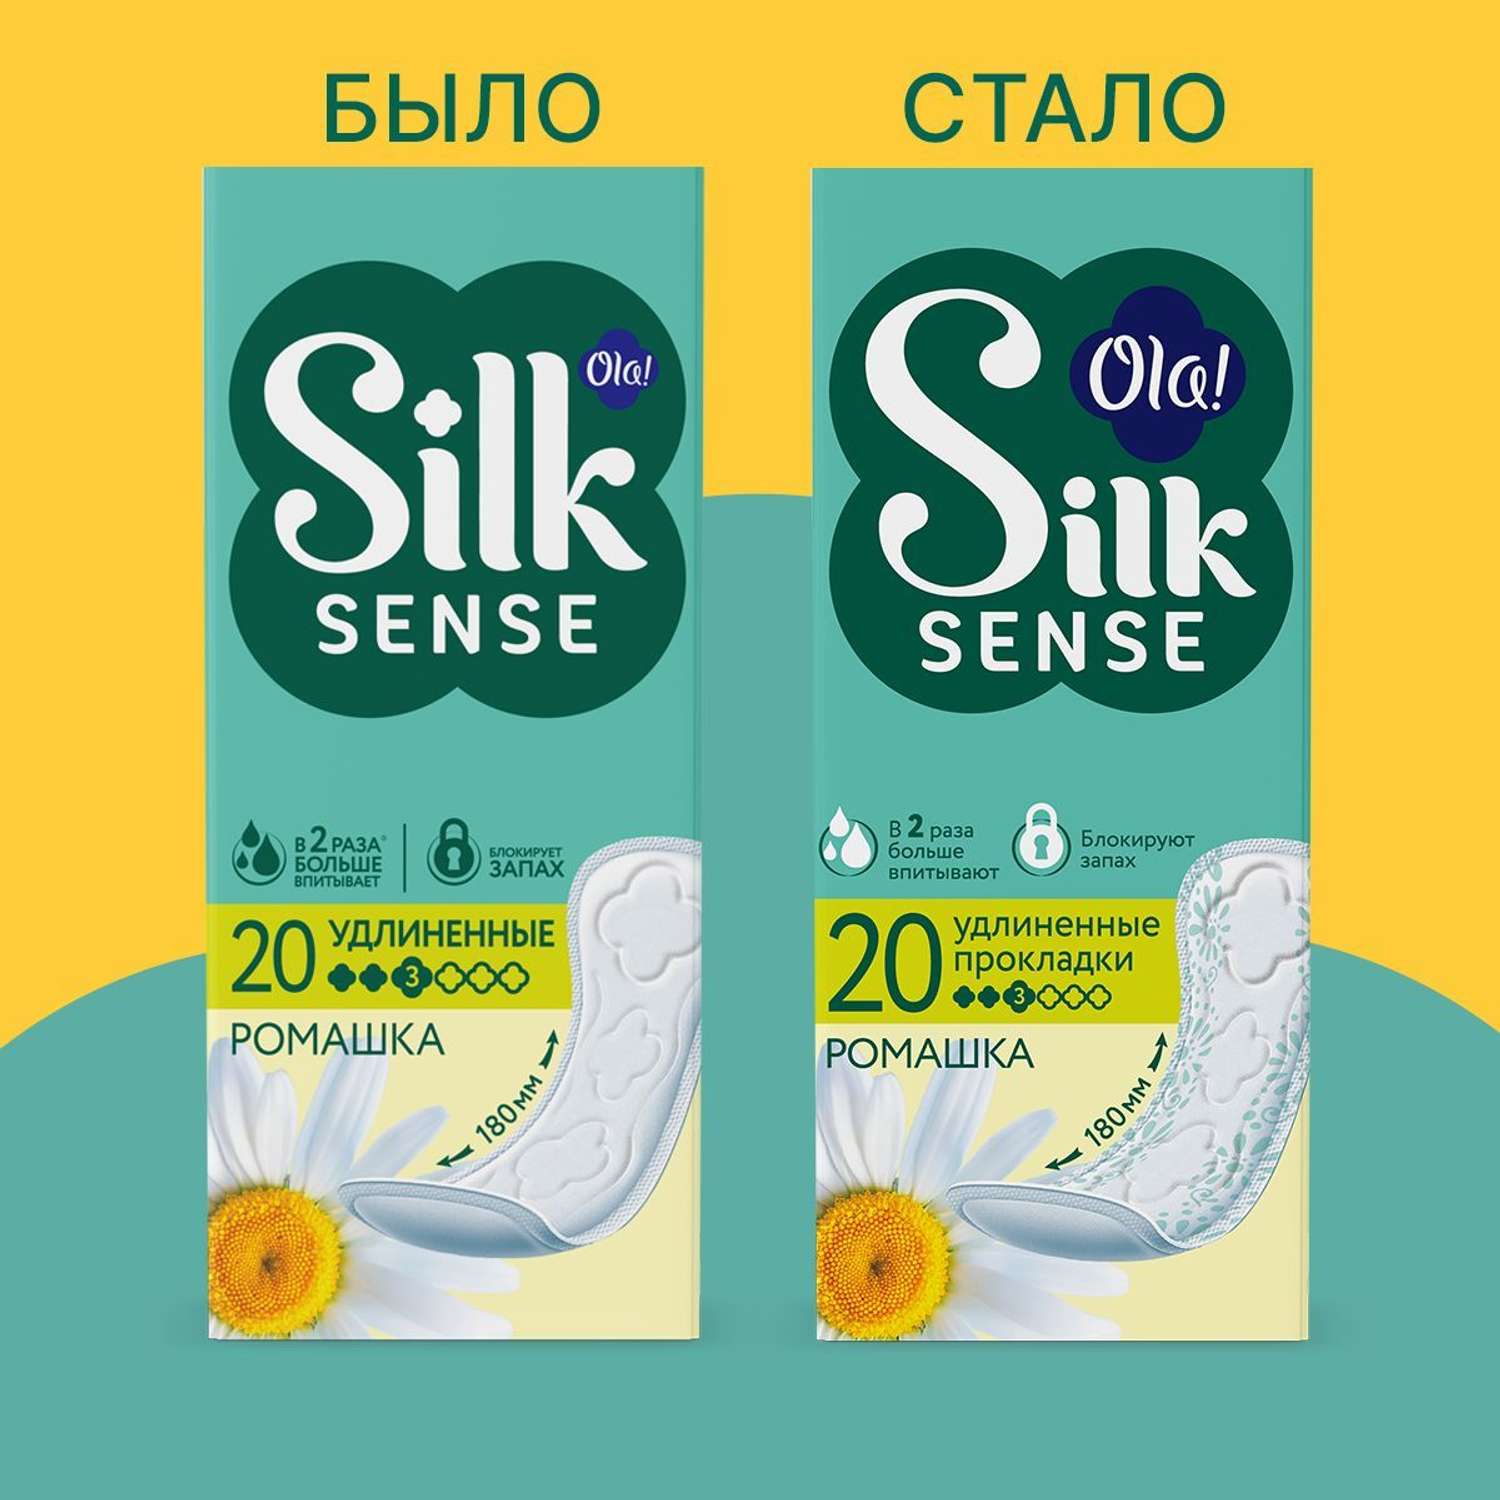 Ежедневные прокладки Ola! Silk Sense удлиненные аромат Ромашка 60 шт 3 уп по 20 шт - фото 11